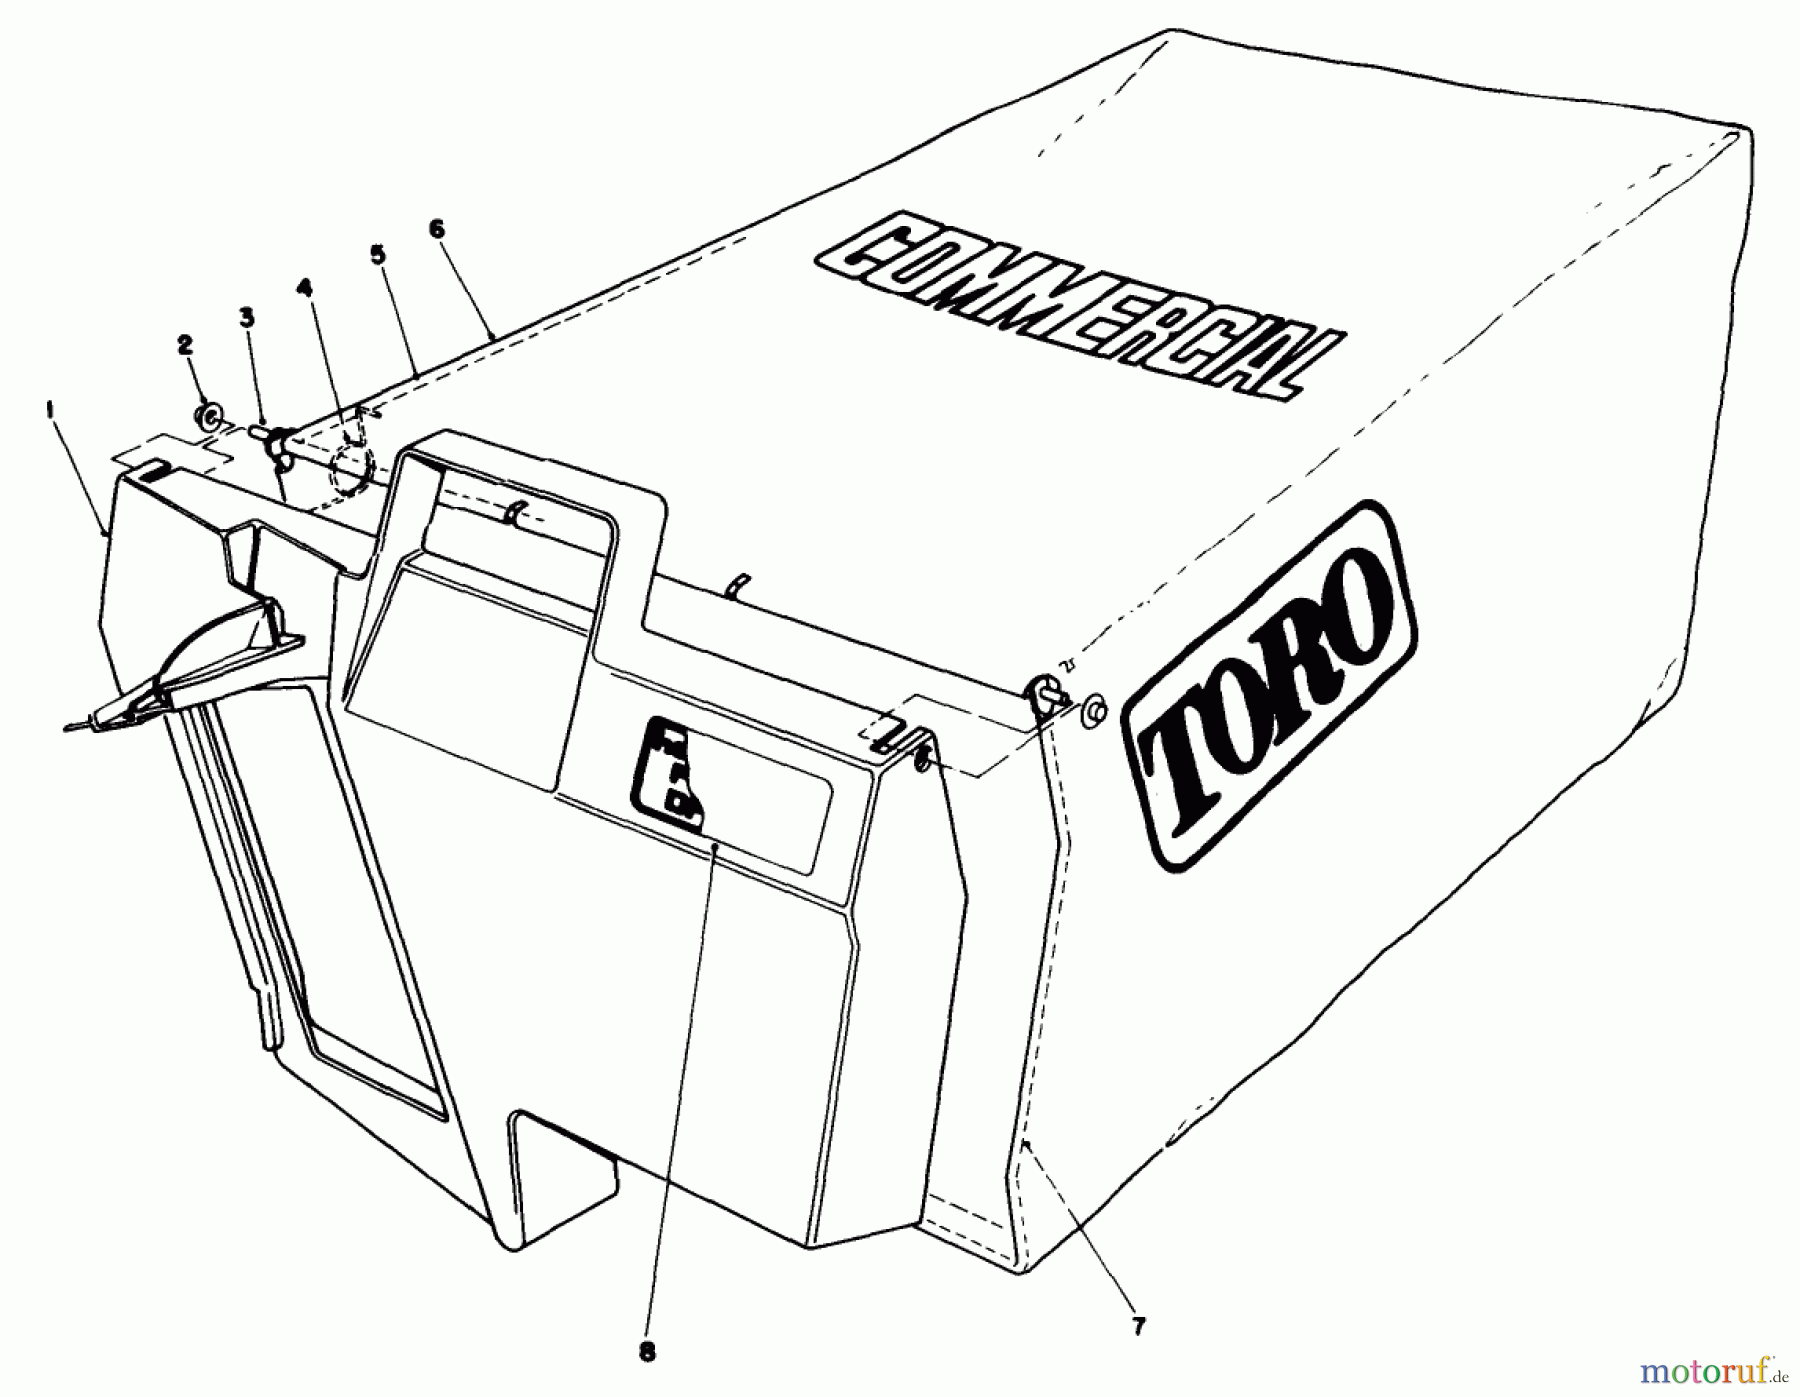  Toro Neu Mowers, Walk-Behind Seite 2 22035C - Toro Lawnmower, 1988 (8000001-8999999) GRASS BAG ASSEMBLY NO. 11-5609